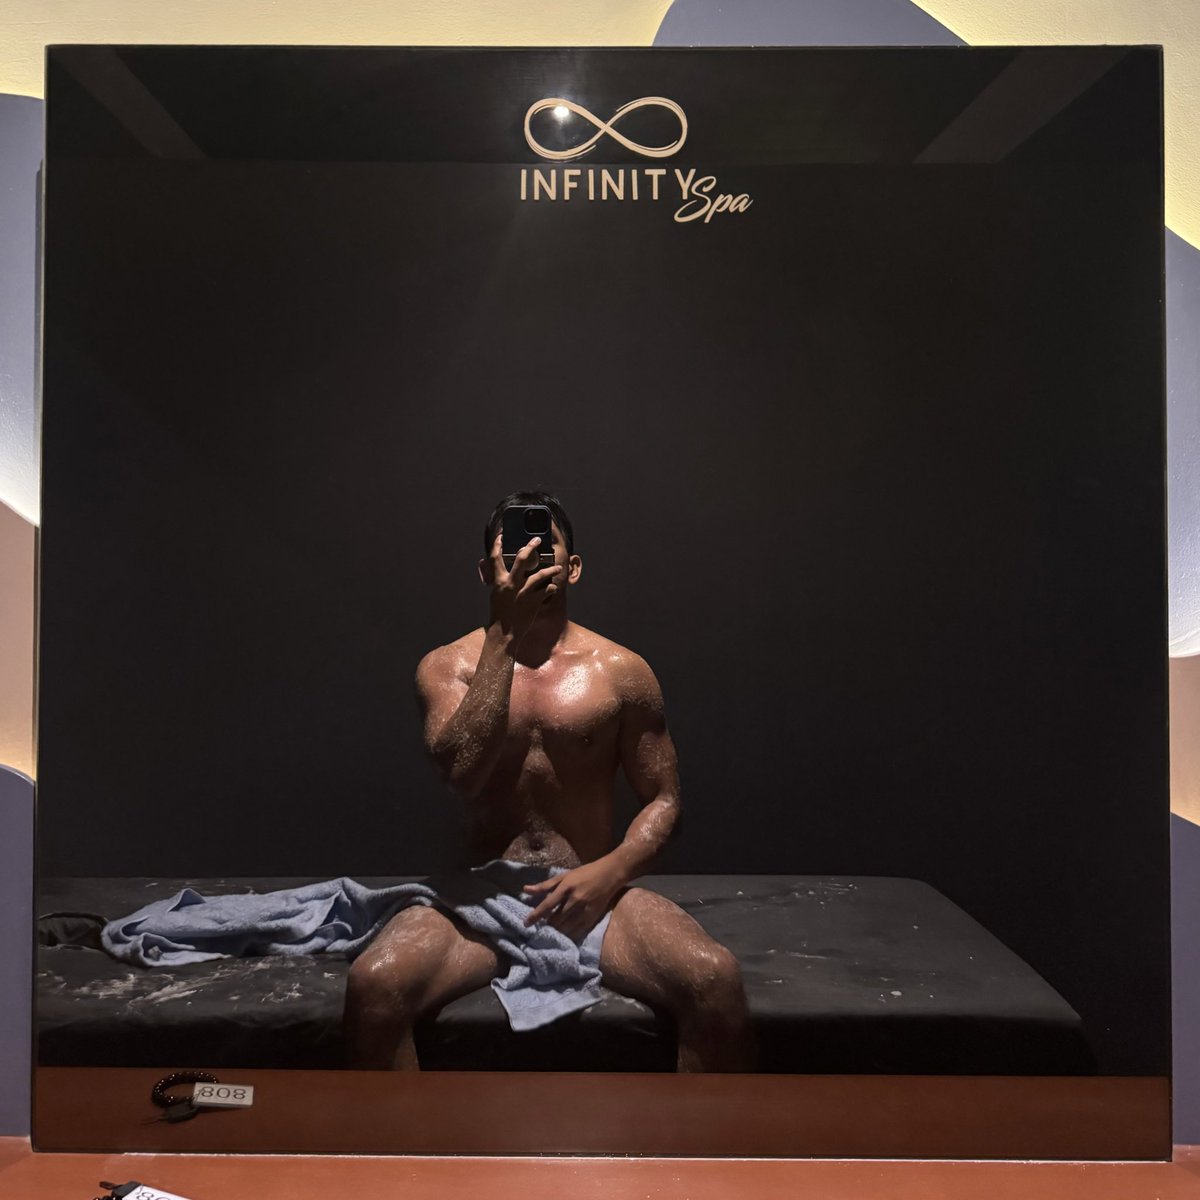 Combi Massage + Body Scrub 🥰#InfinitySpa - Pampanga 

Lambot nung bed sa scrub room 🥺
@infinity_spa_ph